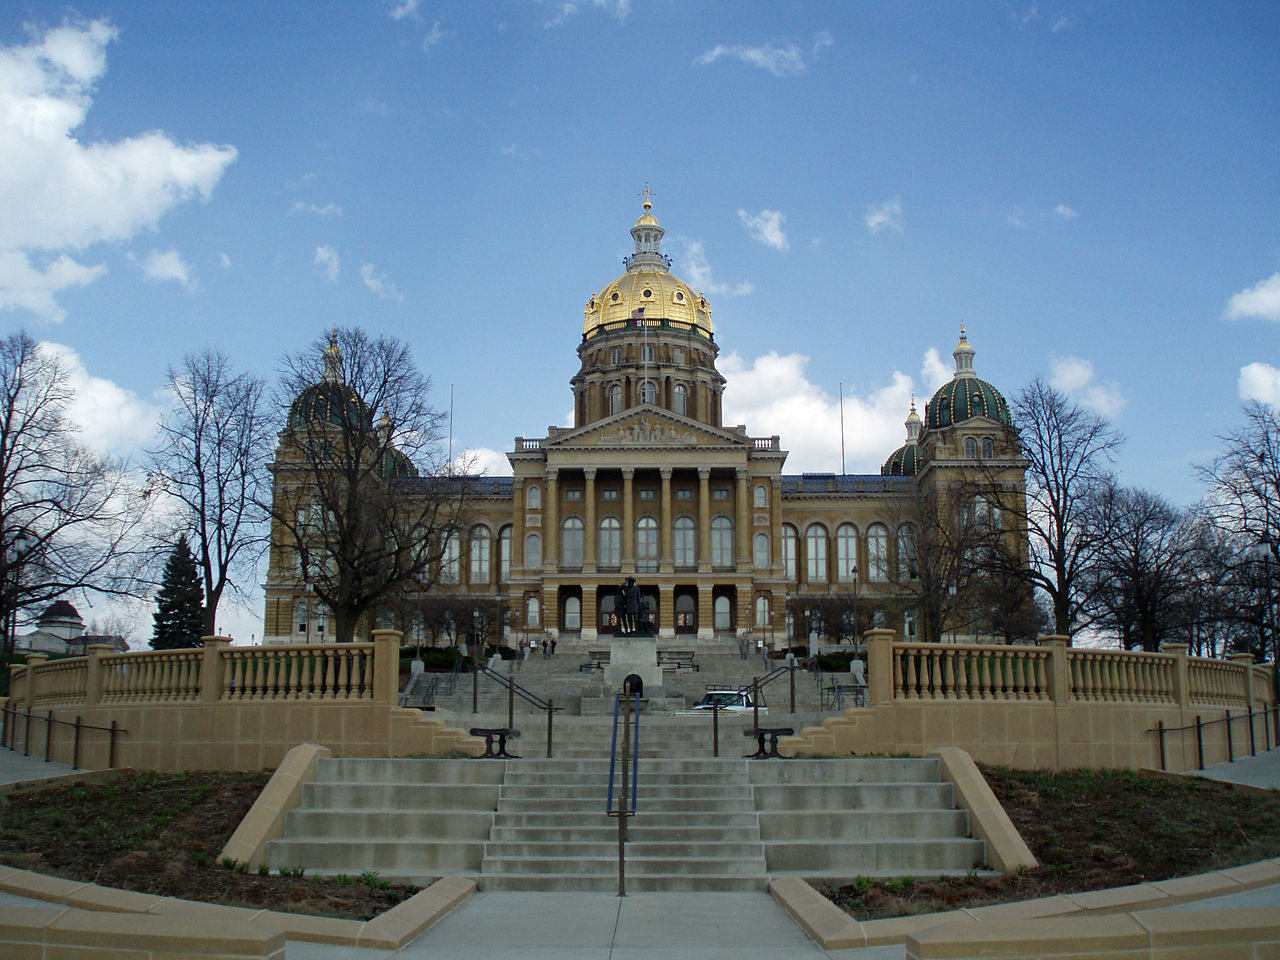 Des Moines State Capitol Building